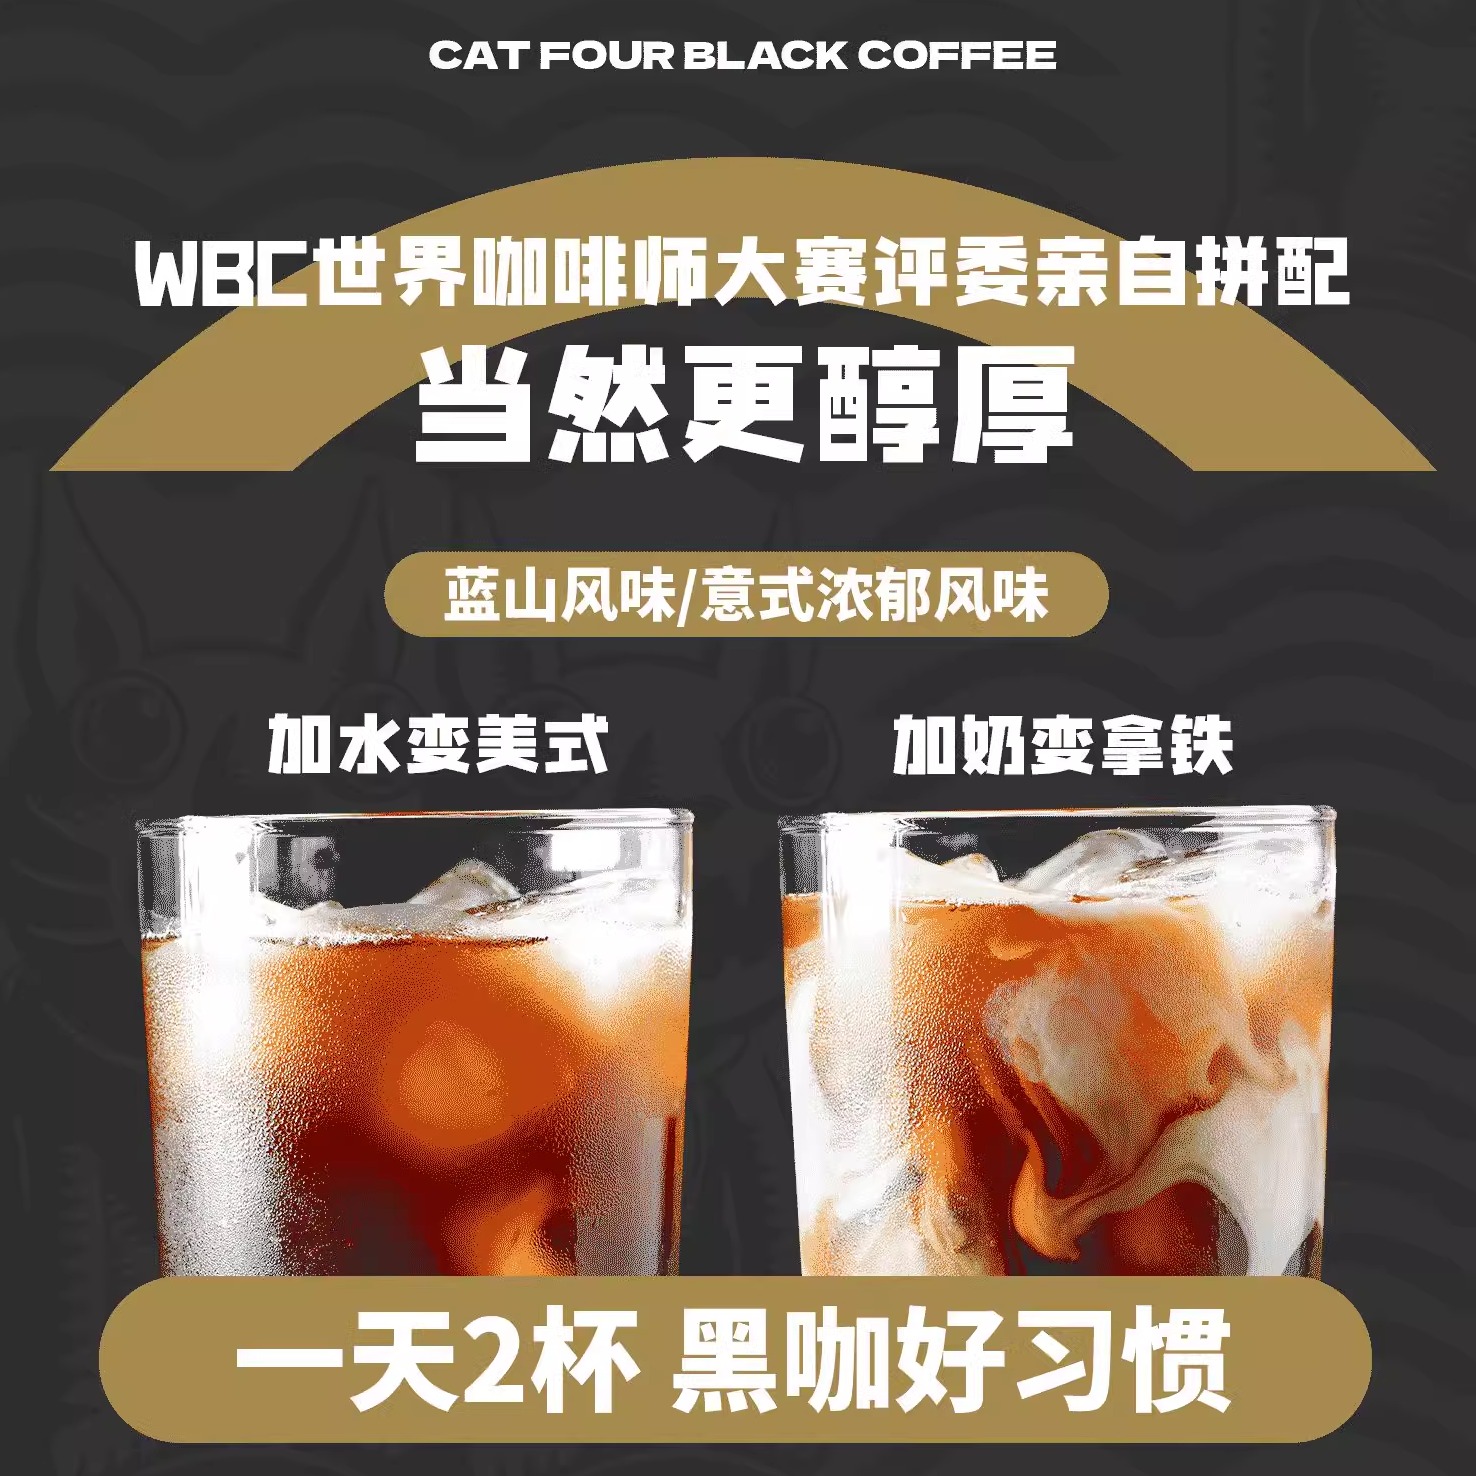 【0蔗糖0脂肪黑咖啡】四只猫咖啡白芸豆黑咖啡速溶咖啡30杯/盒 - 图2